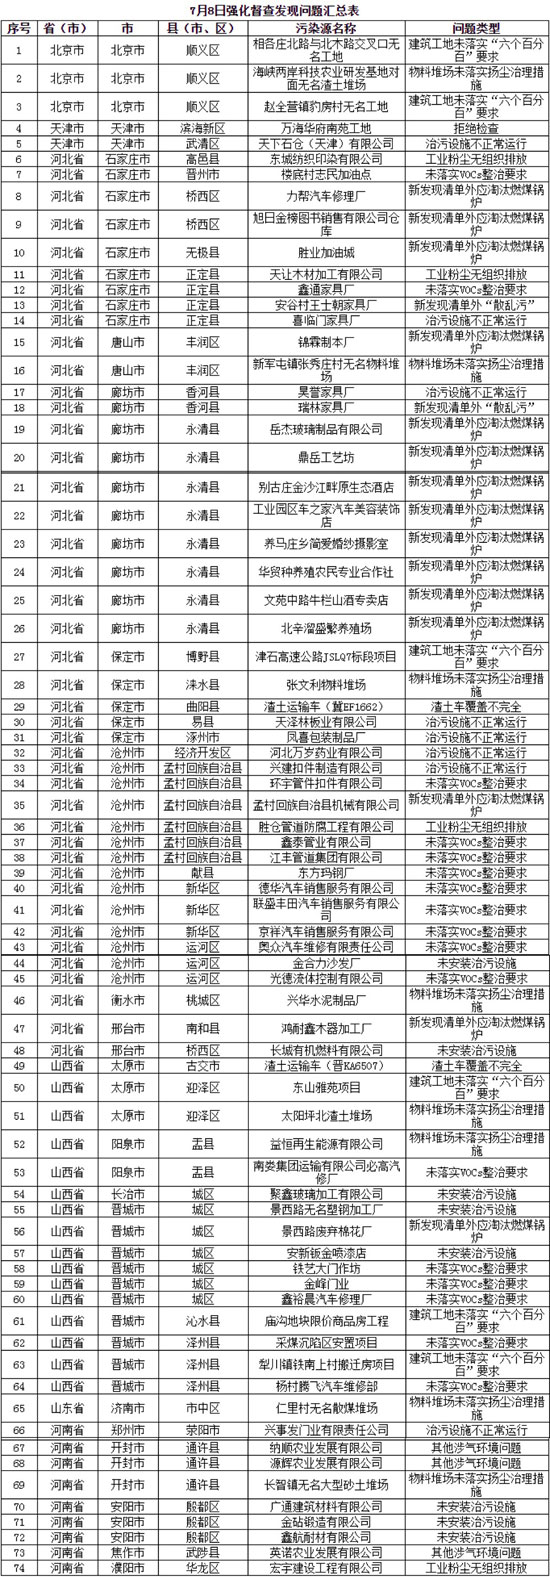 蓝天保卫战京津冀及周边新发现涉气环境问题74个